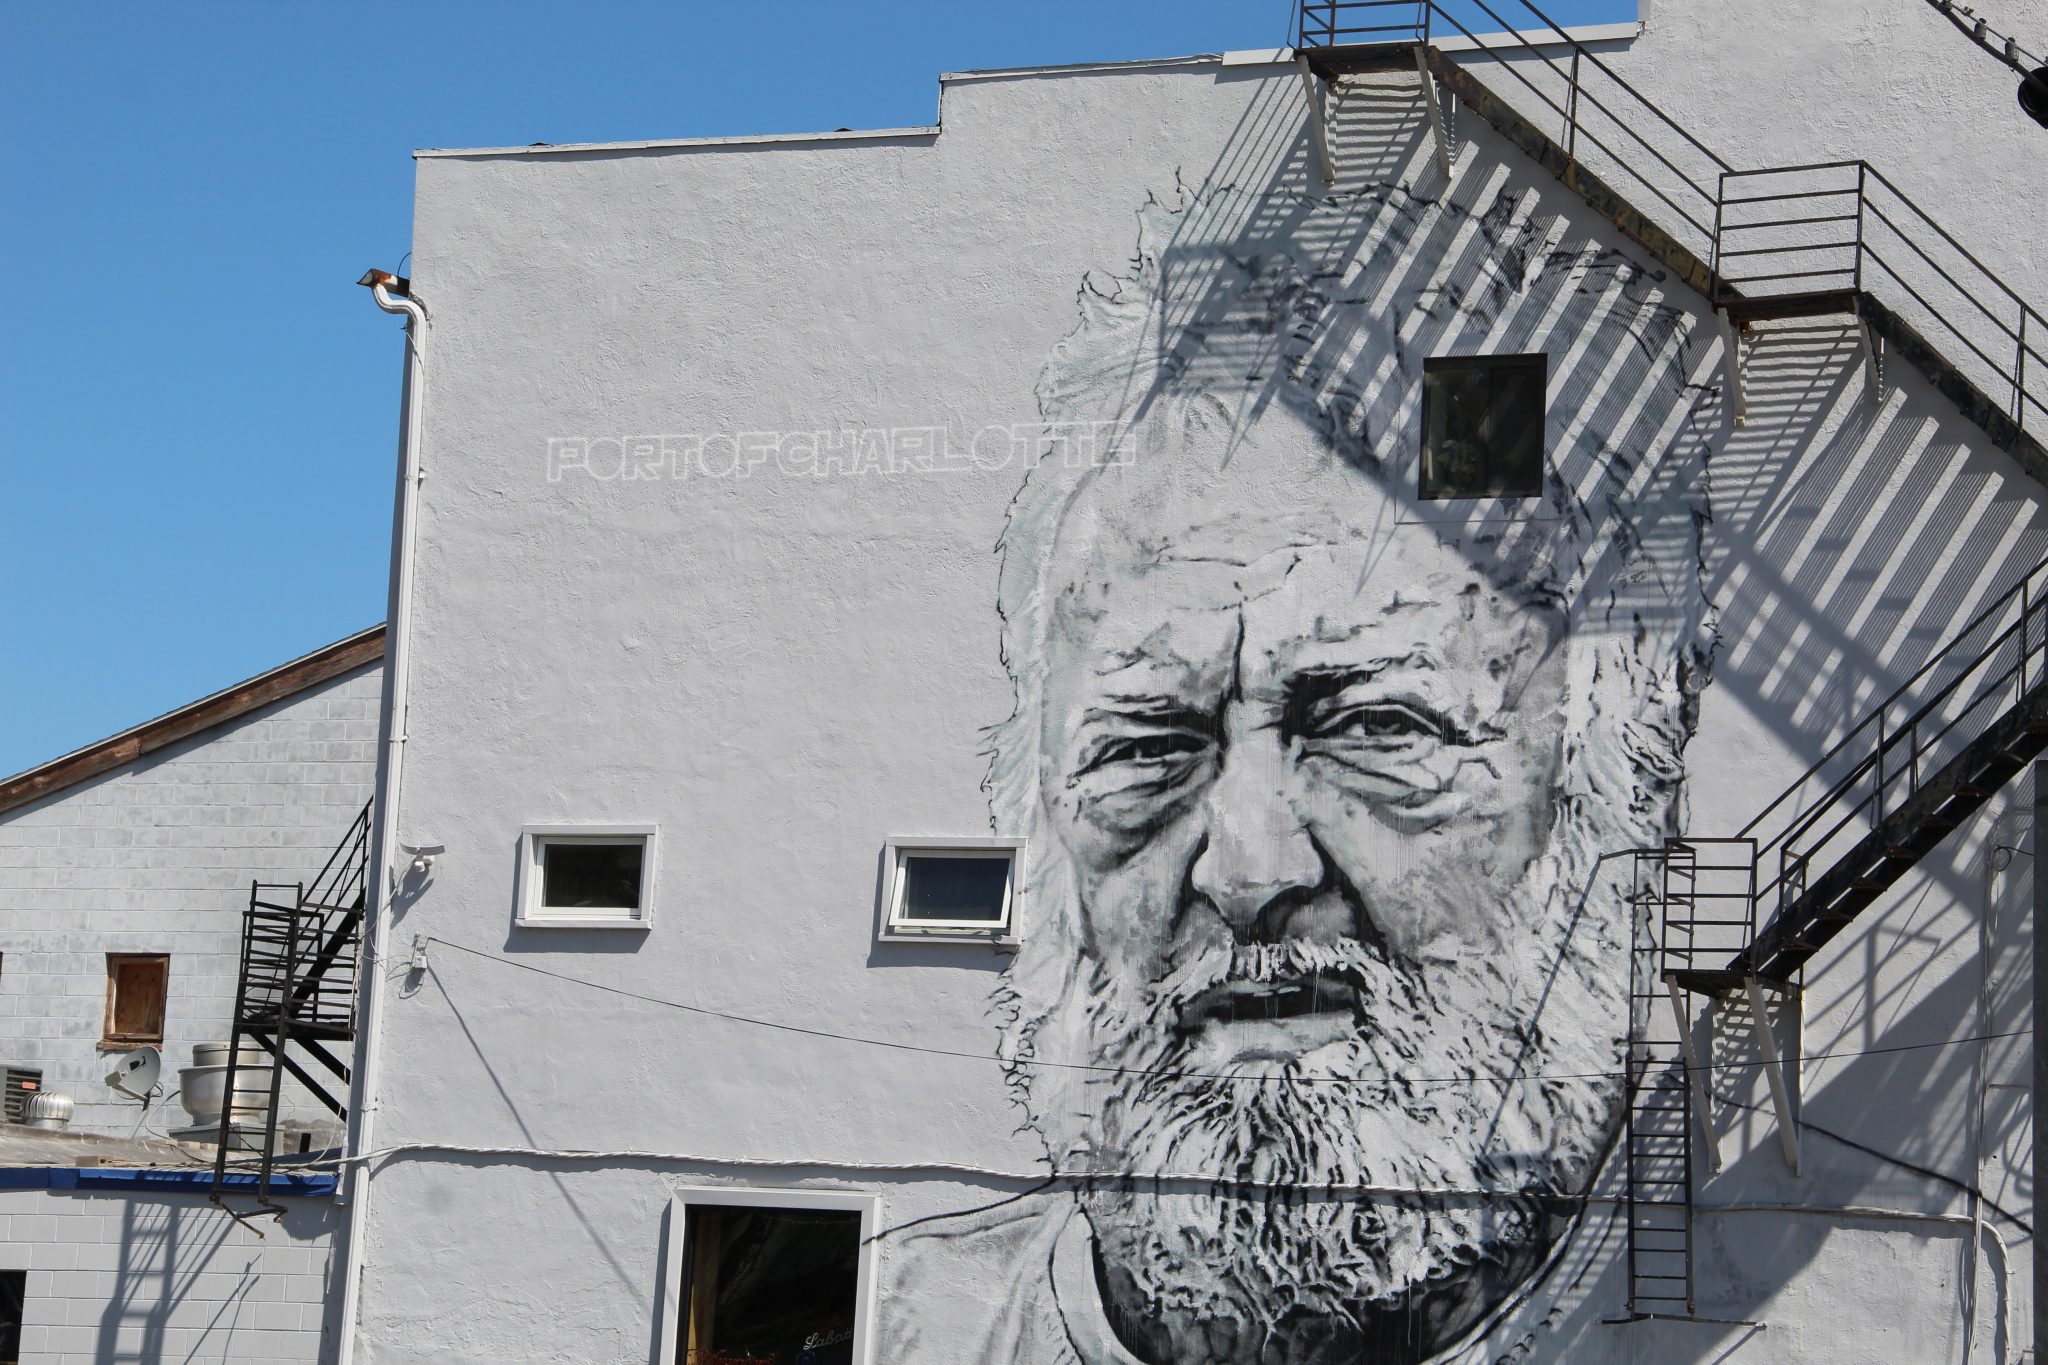 Street art, mural graffitti, Port of Charlotte, Charlotte, New York, USA